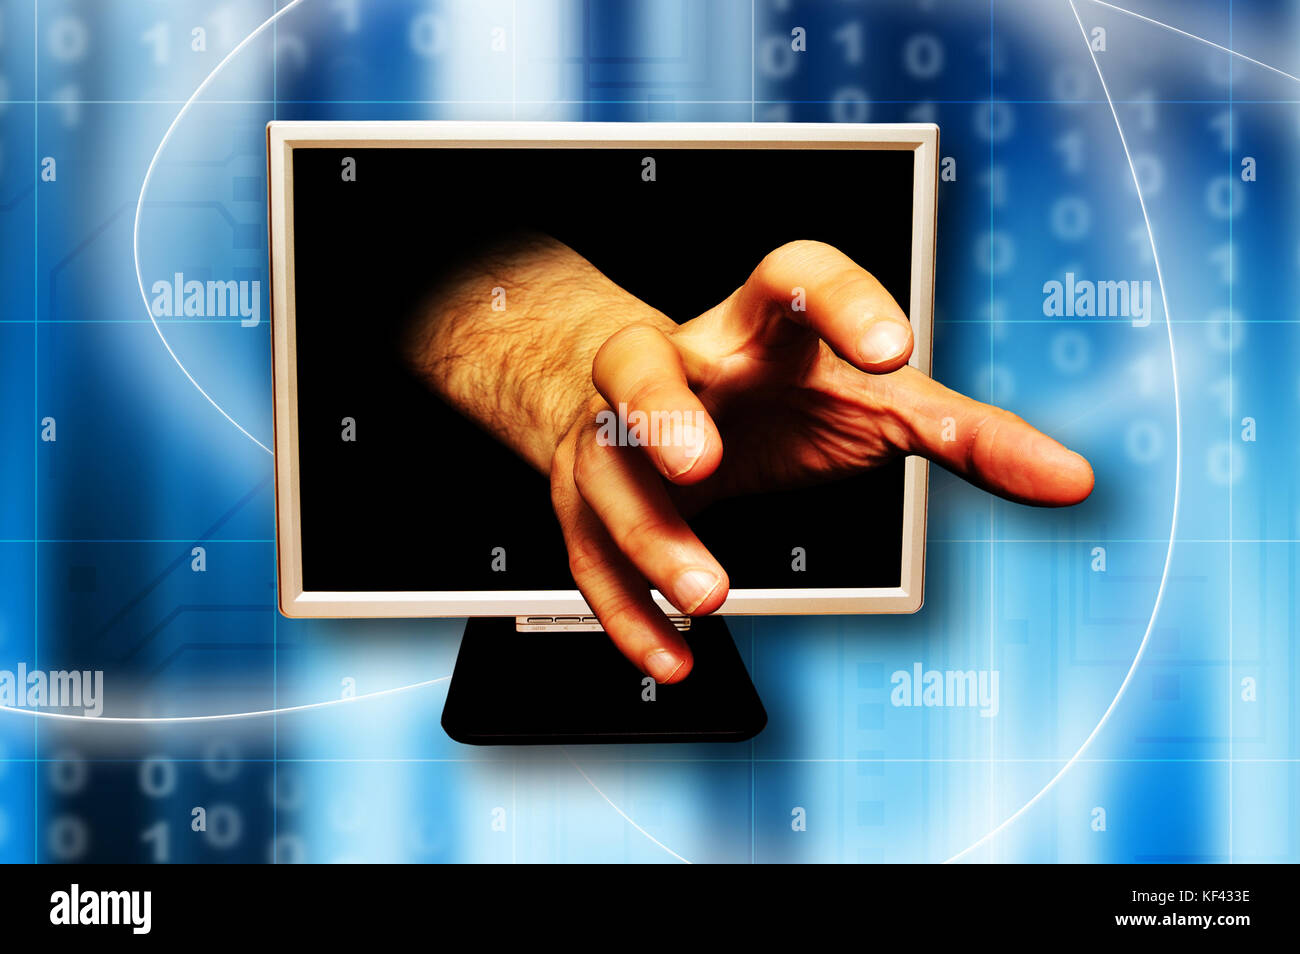 La main qui sort de l'écran d'un ordinateur, attrapant le geste, le vol d'identité ou la cybercriminalité concept Banque D'Images